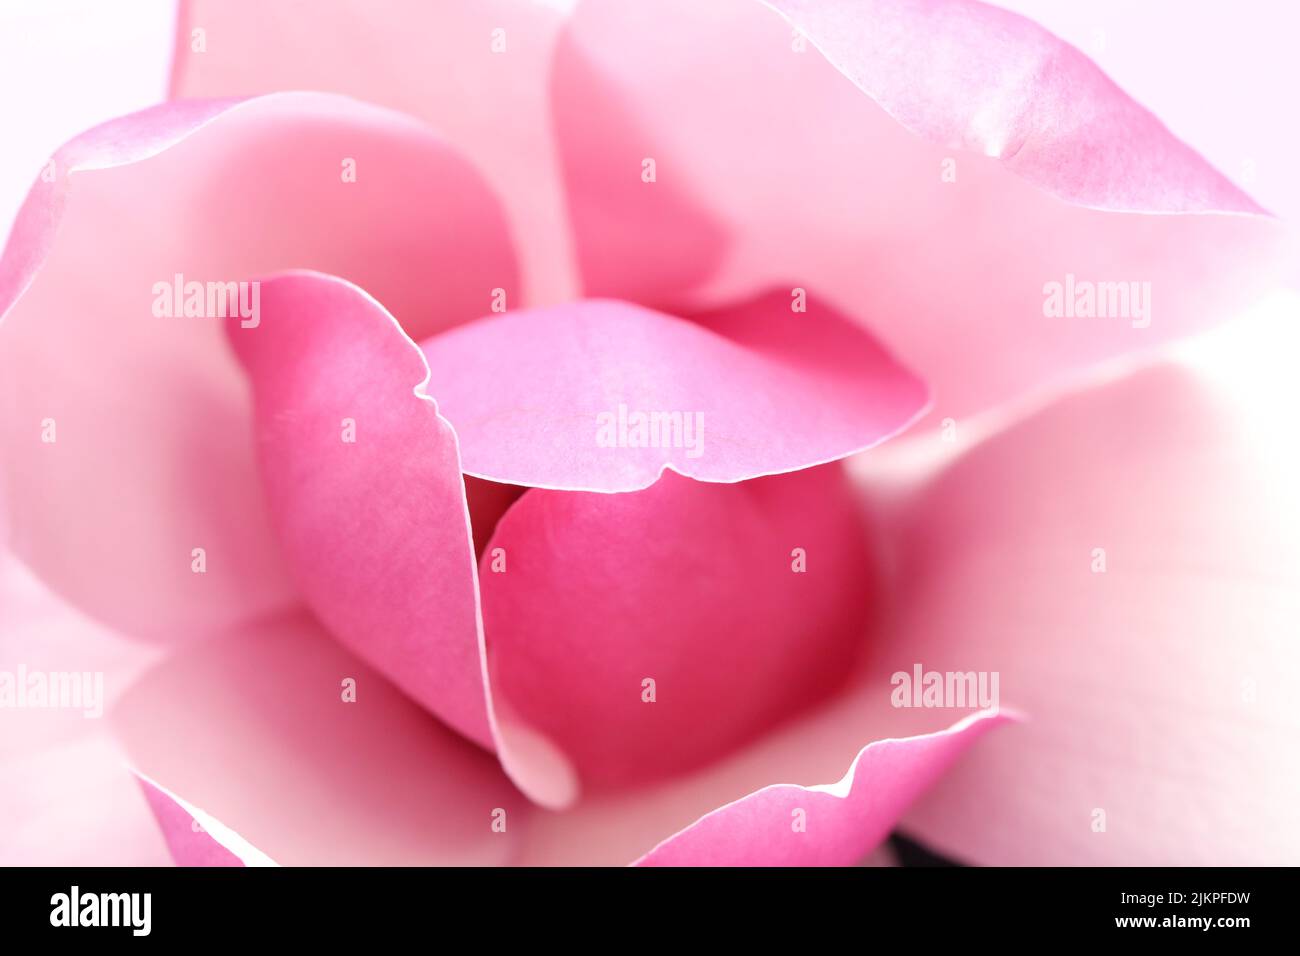 Messa a fuoco morbida e delicata piega rosa del fiore e dei petali magnolia. Primo piano macro estremo che mostra bordi nitidi e colori delicati. Foto Stock